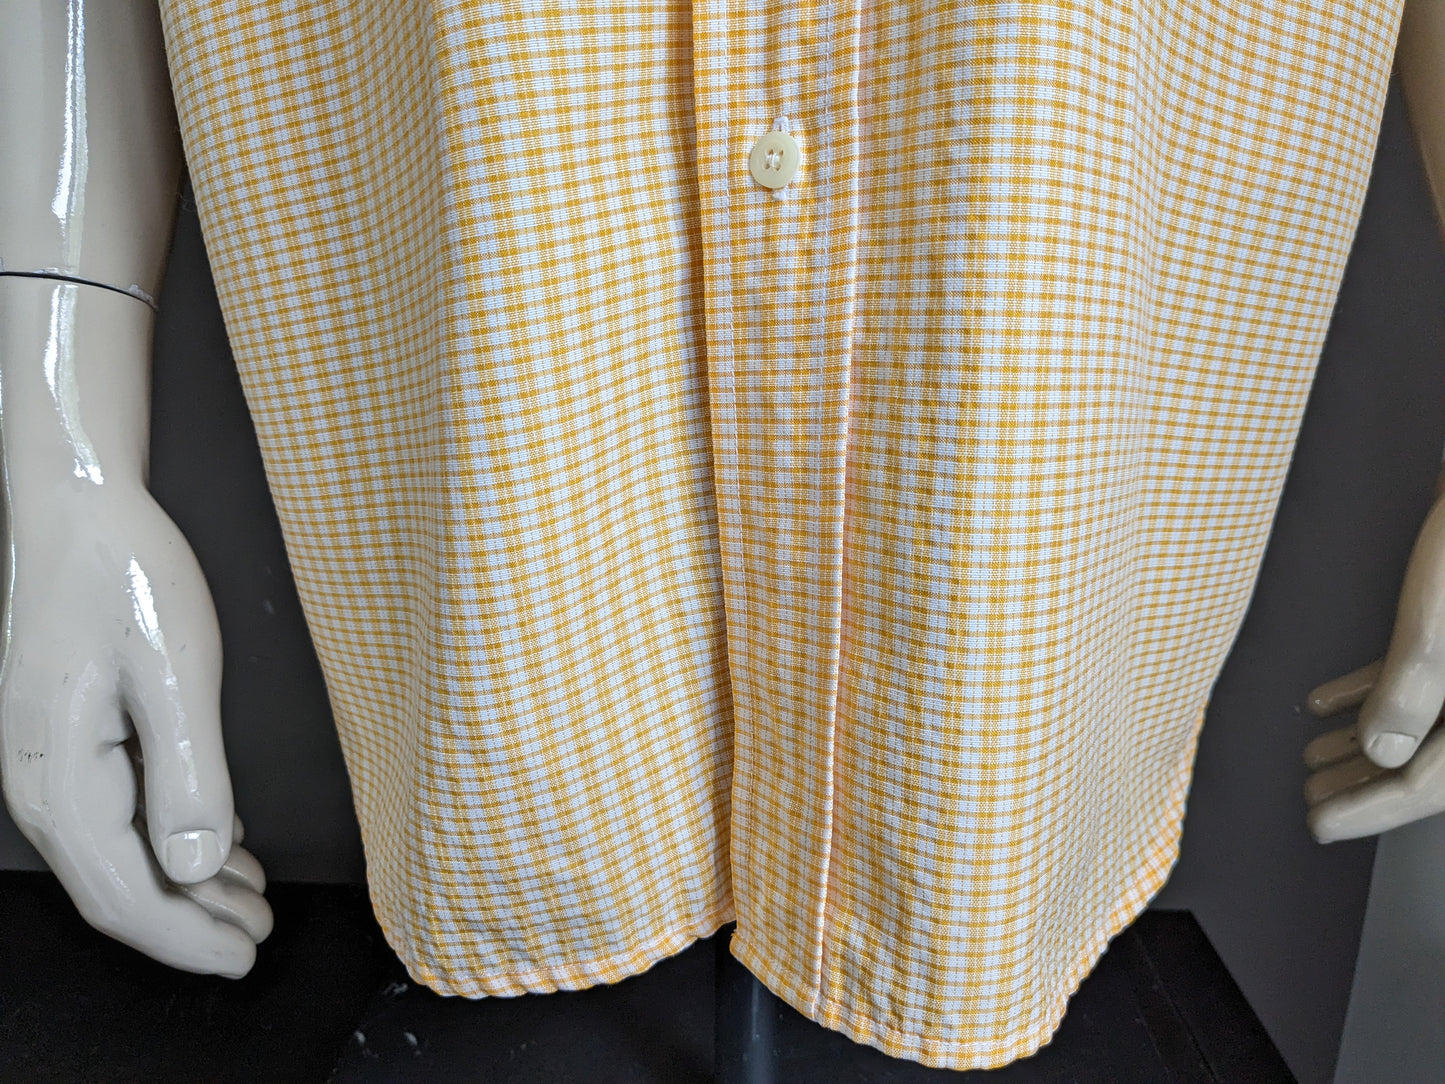 Chemise de club décontractée vintage à manches courtes. Motif beige orange. Taille xl / xxl-2xl.